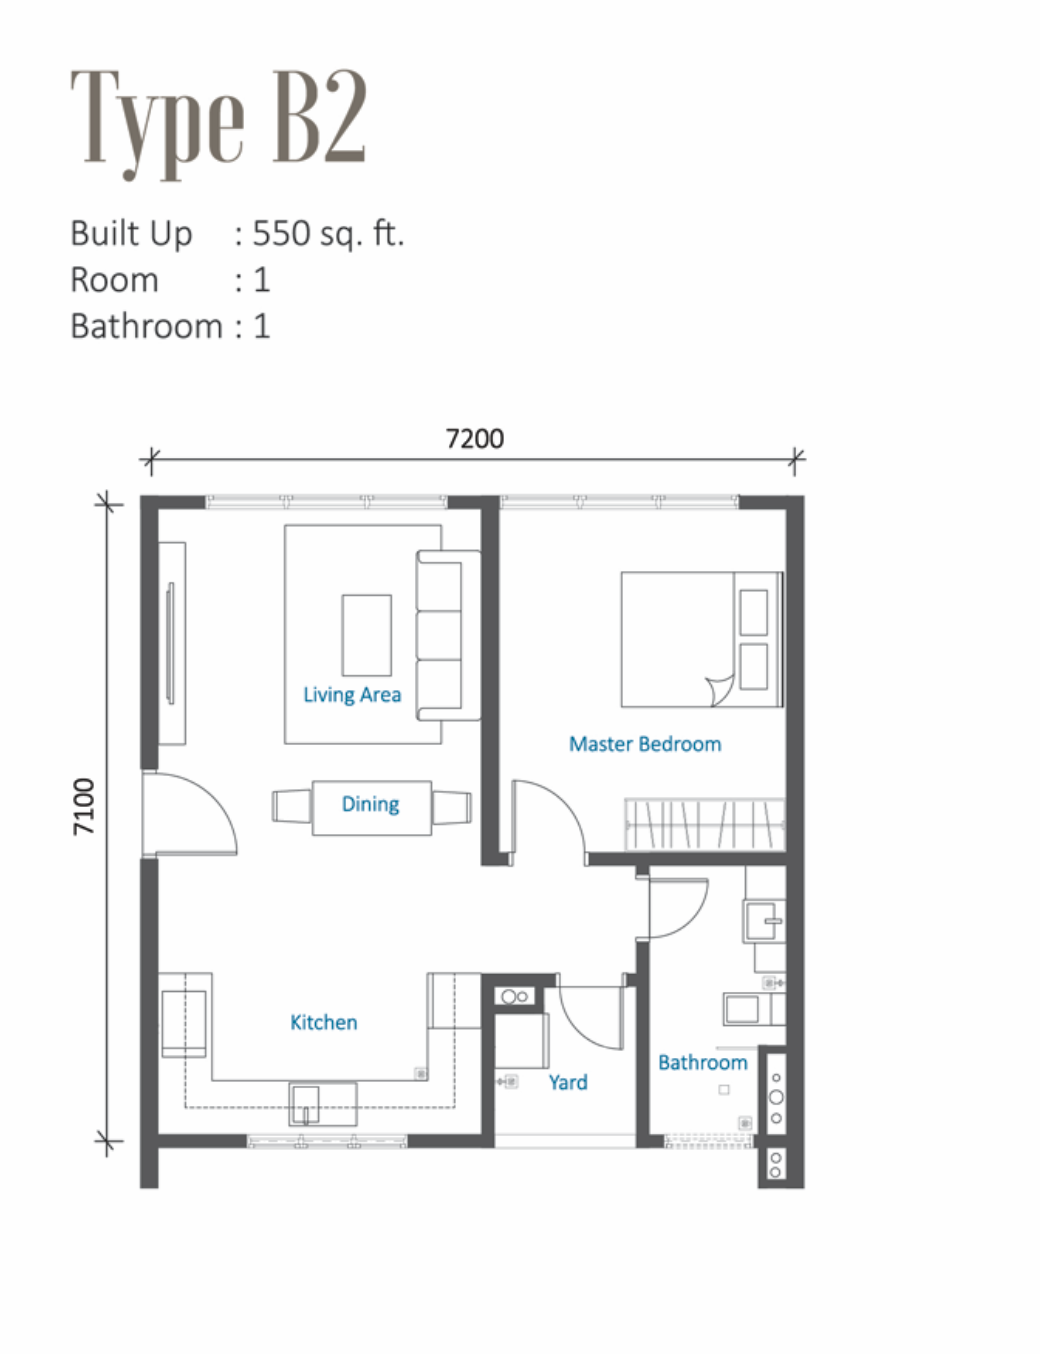 1 room, 1 bath, 550 sq ft built up